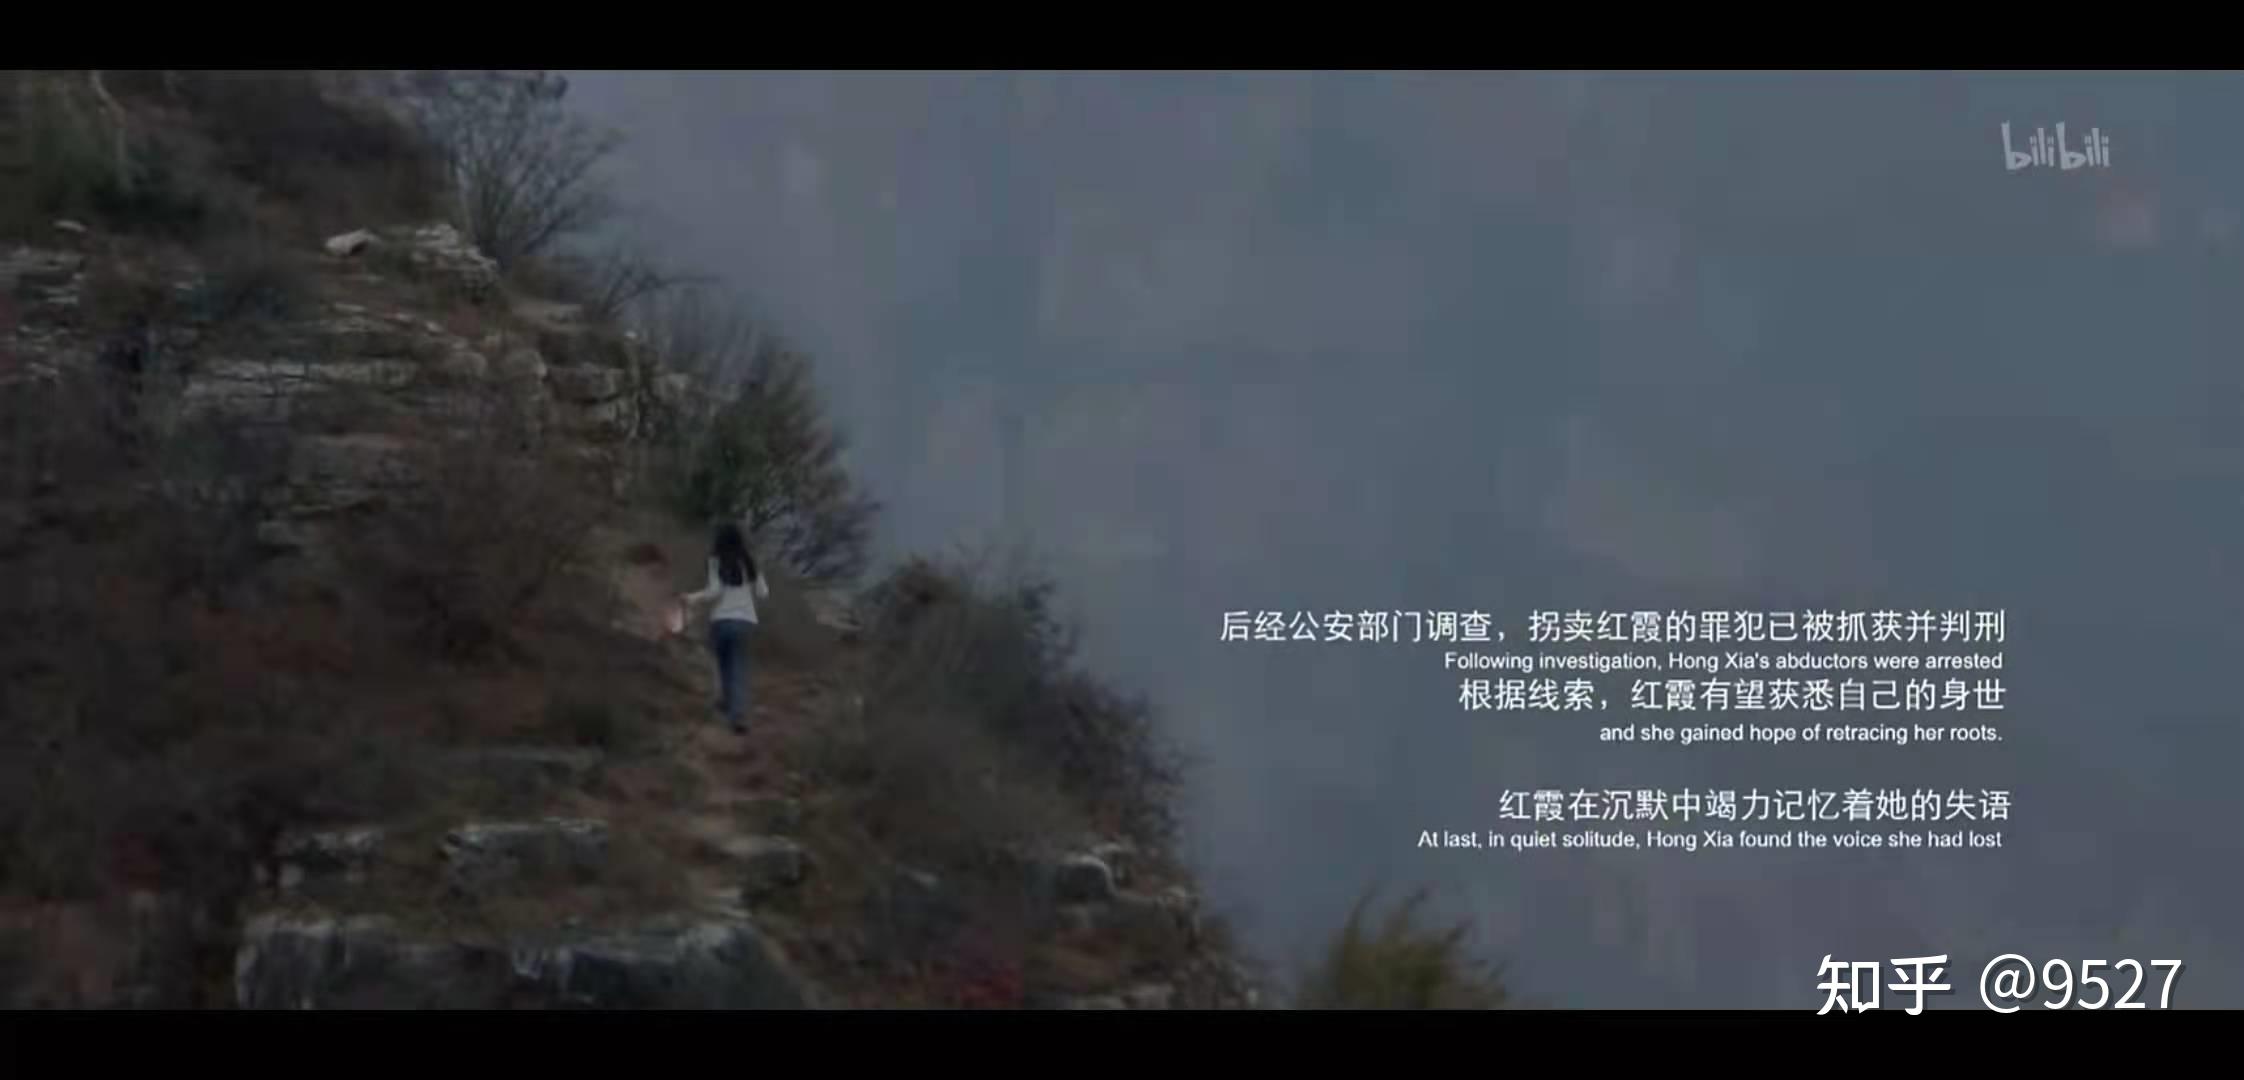 人站在山顶的高清图片,山顶俯瞰,一个人站在高山的图片_大山谷图库